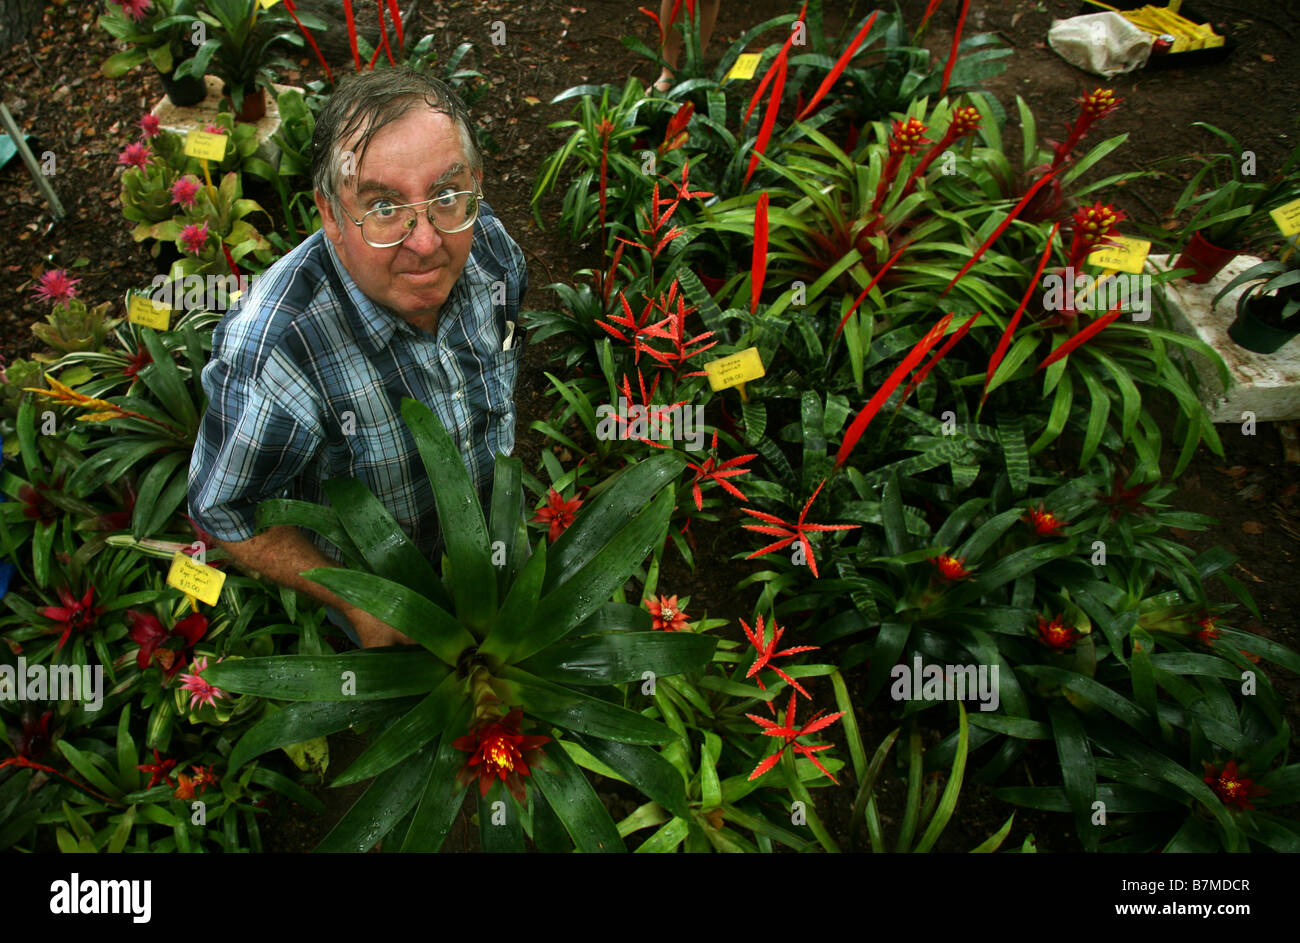 Chris Underhill avec certains de ses broméliacées et autres plantes exotiques qu'il vend à Bangalow et marchés de Byron Bay en Australie Banque D'Images